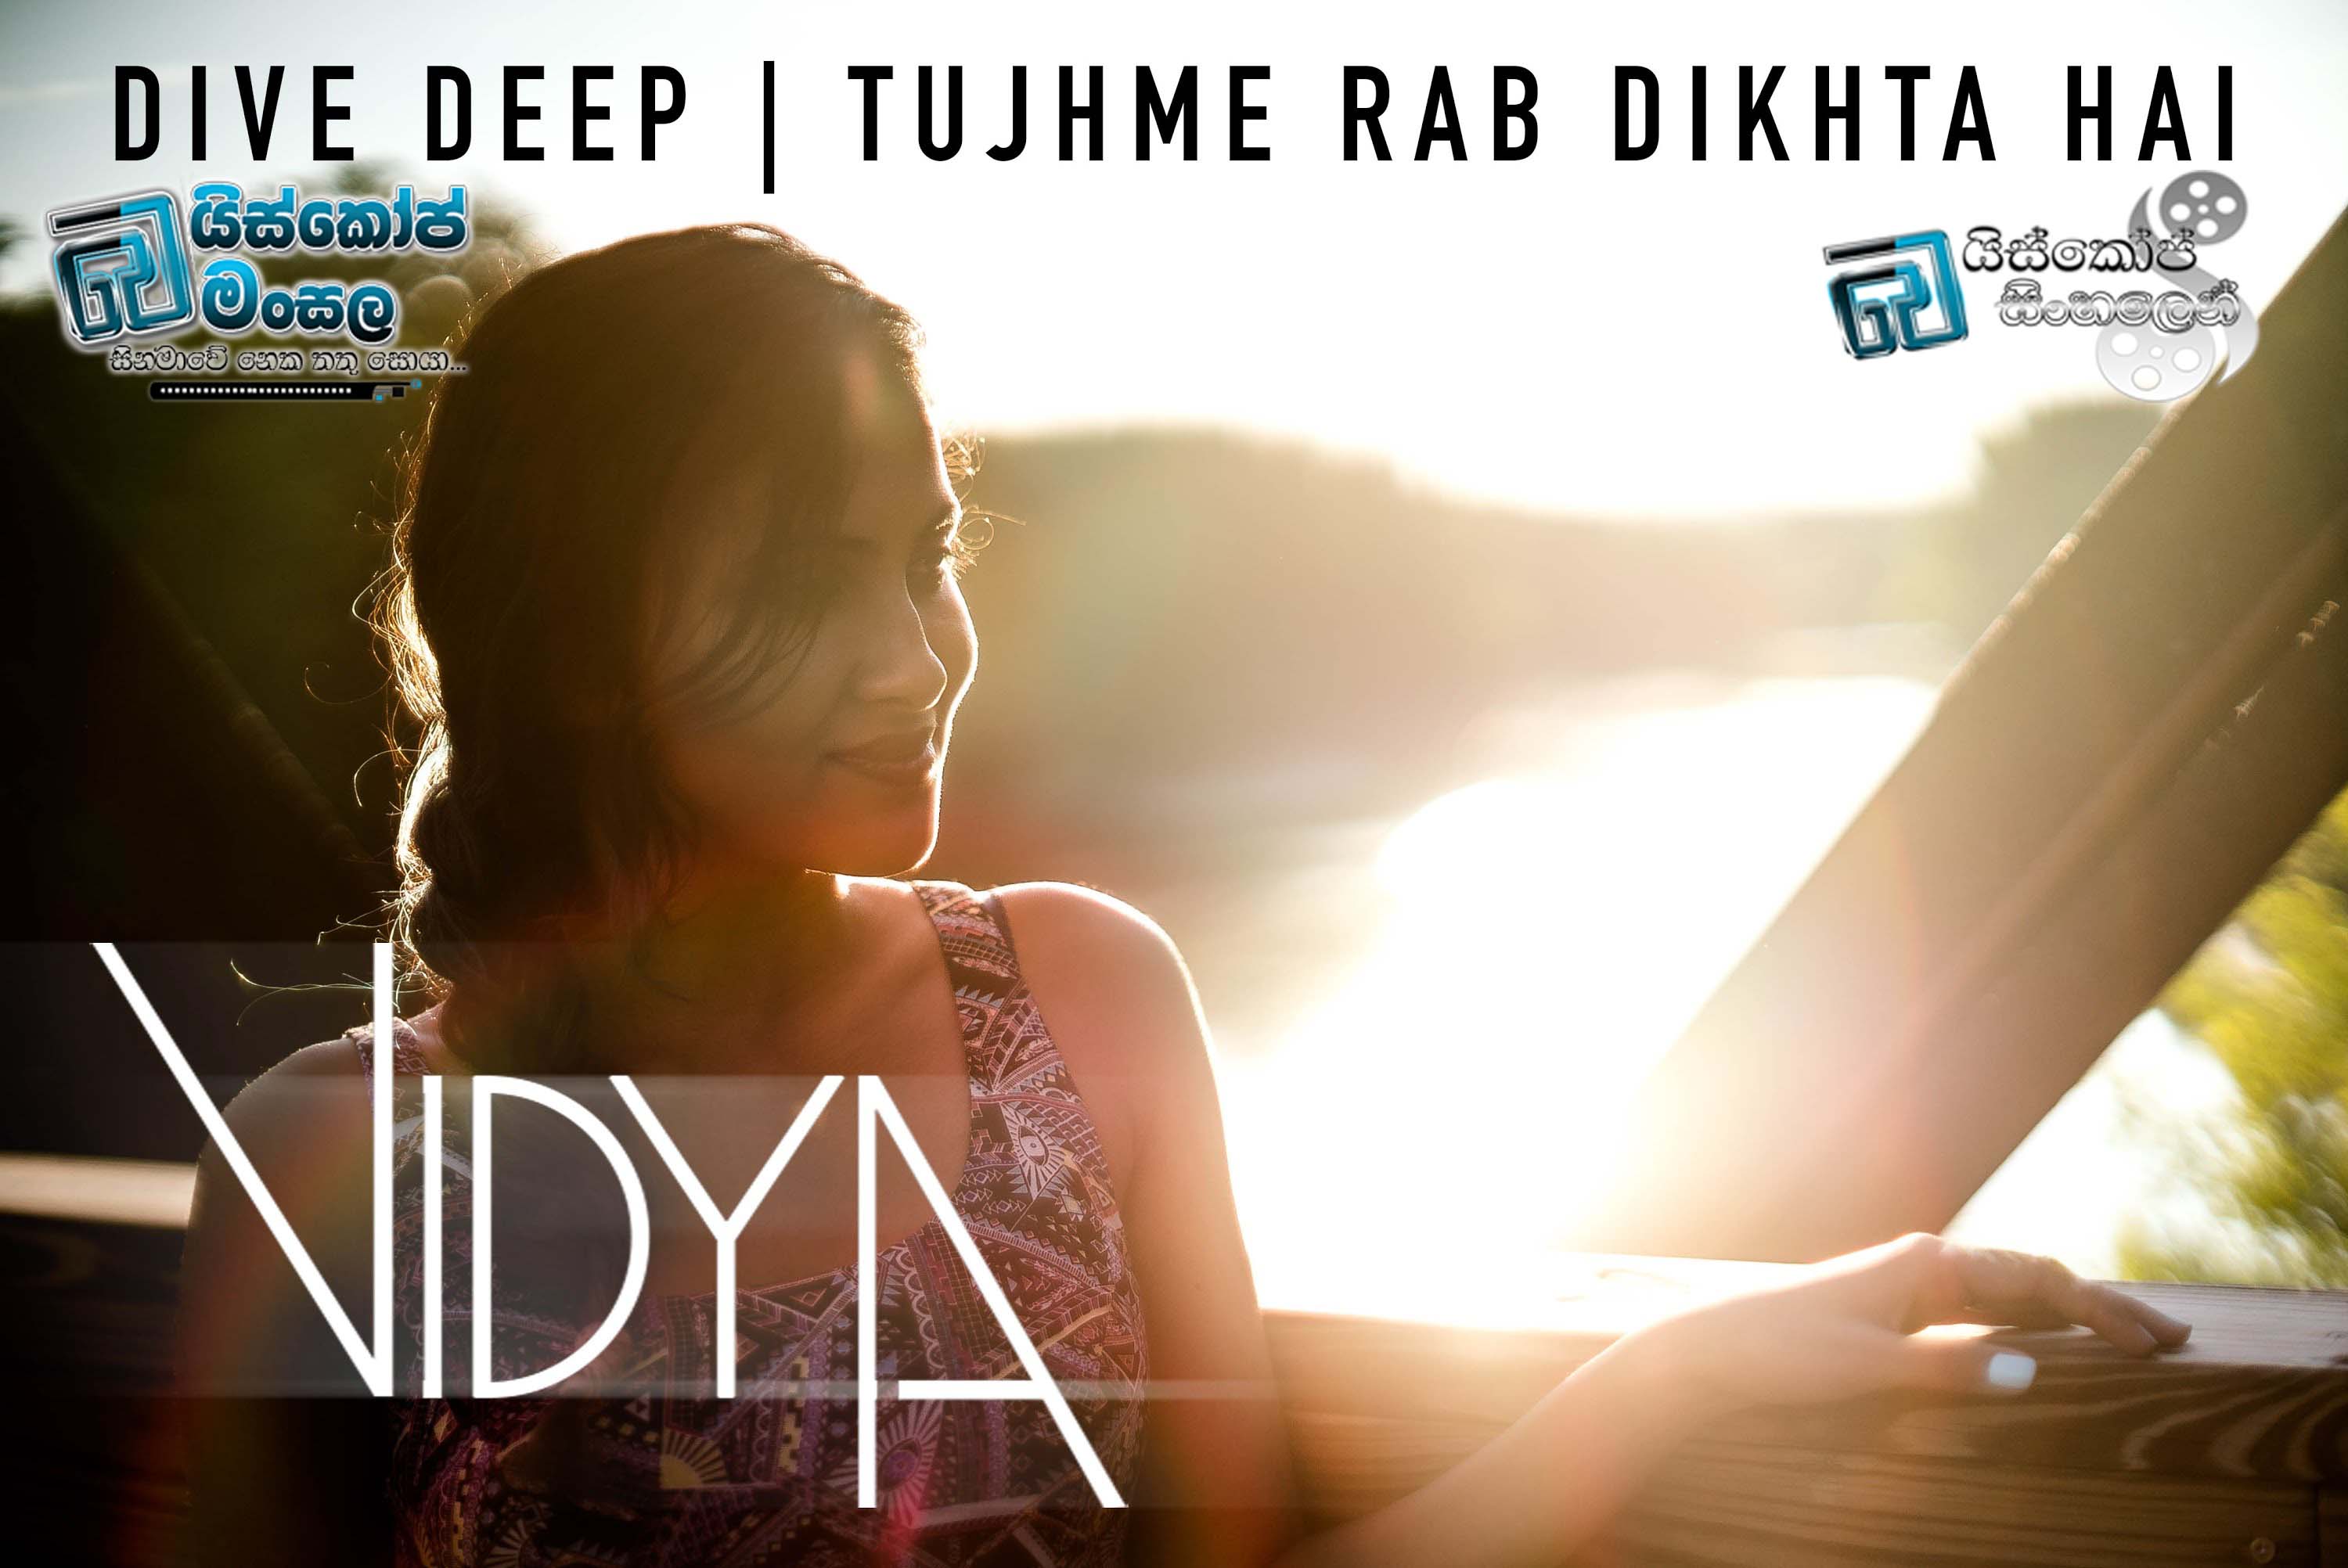 සිනමාවේ ගීත ලොවින් ඔබ්බට 5 | Vidya Mashup Cover – (Dive Deep – Tujhme Rab Dikhta Hai) සිංහල උපසිරසි සමඟින්